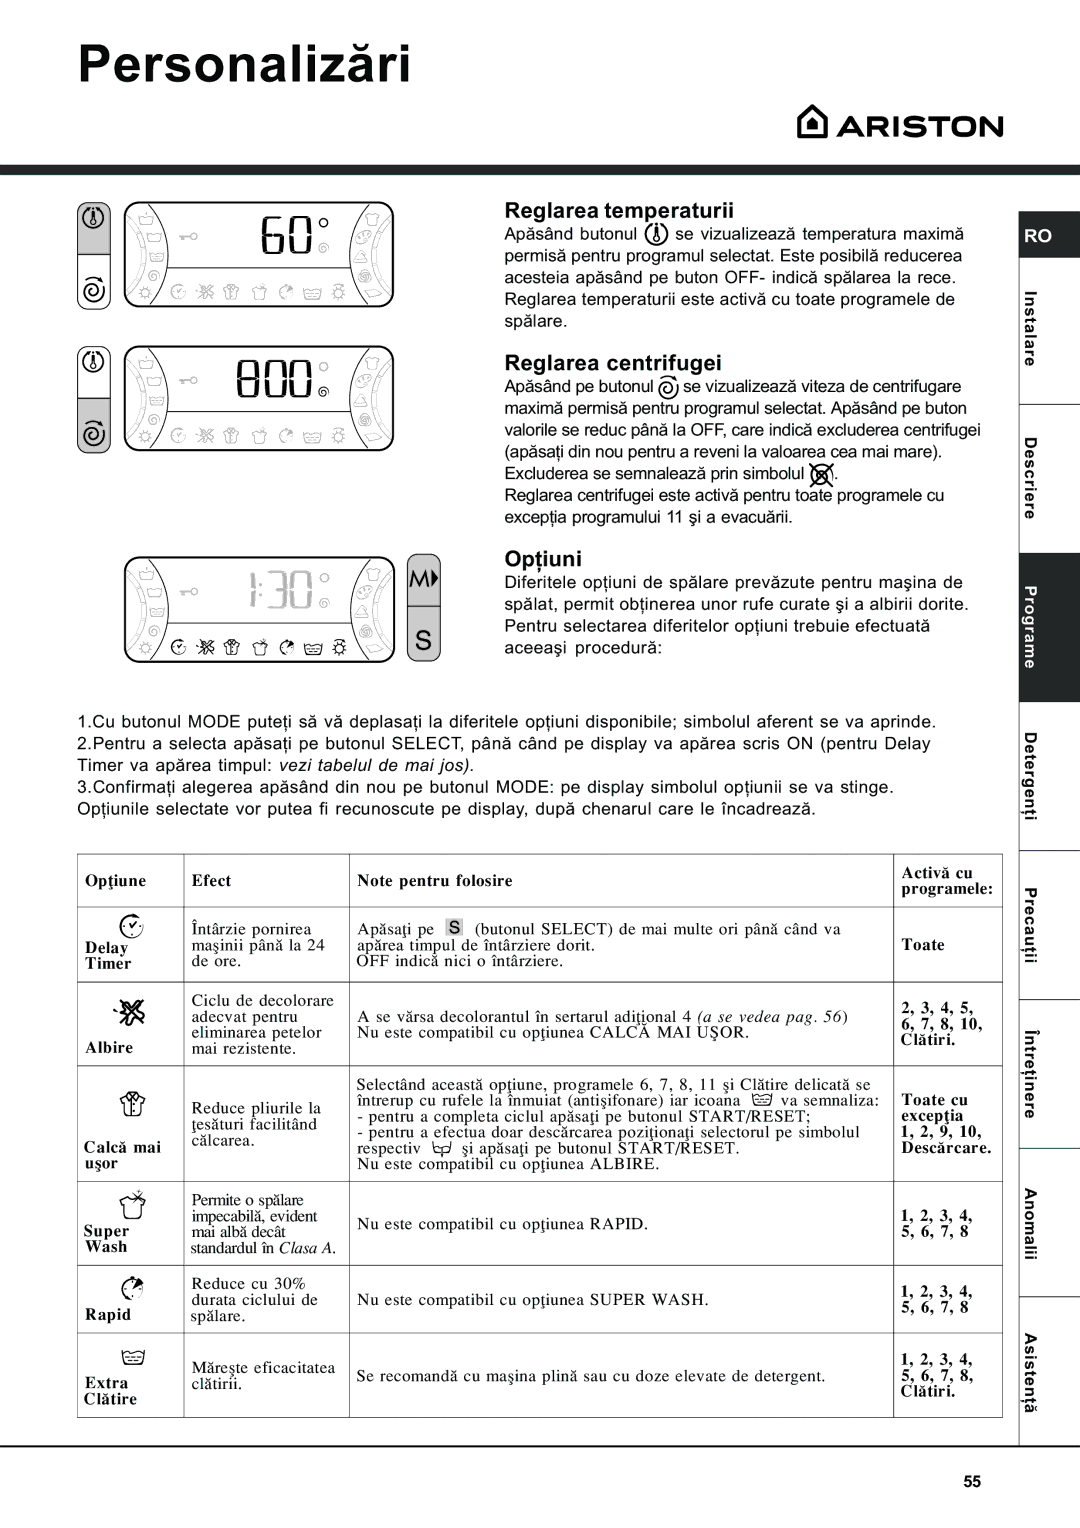 Ariston AVSD 109 manual Personalizãri, Reglarea temperaturii, Reglarea centrifugei, Opþiuni 